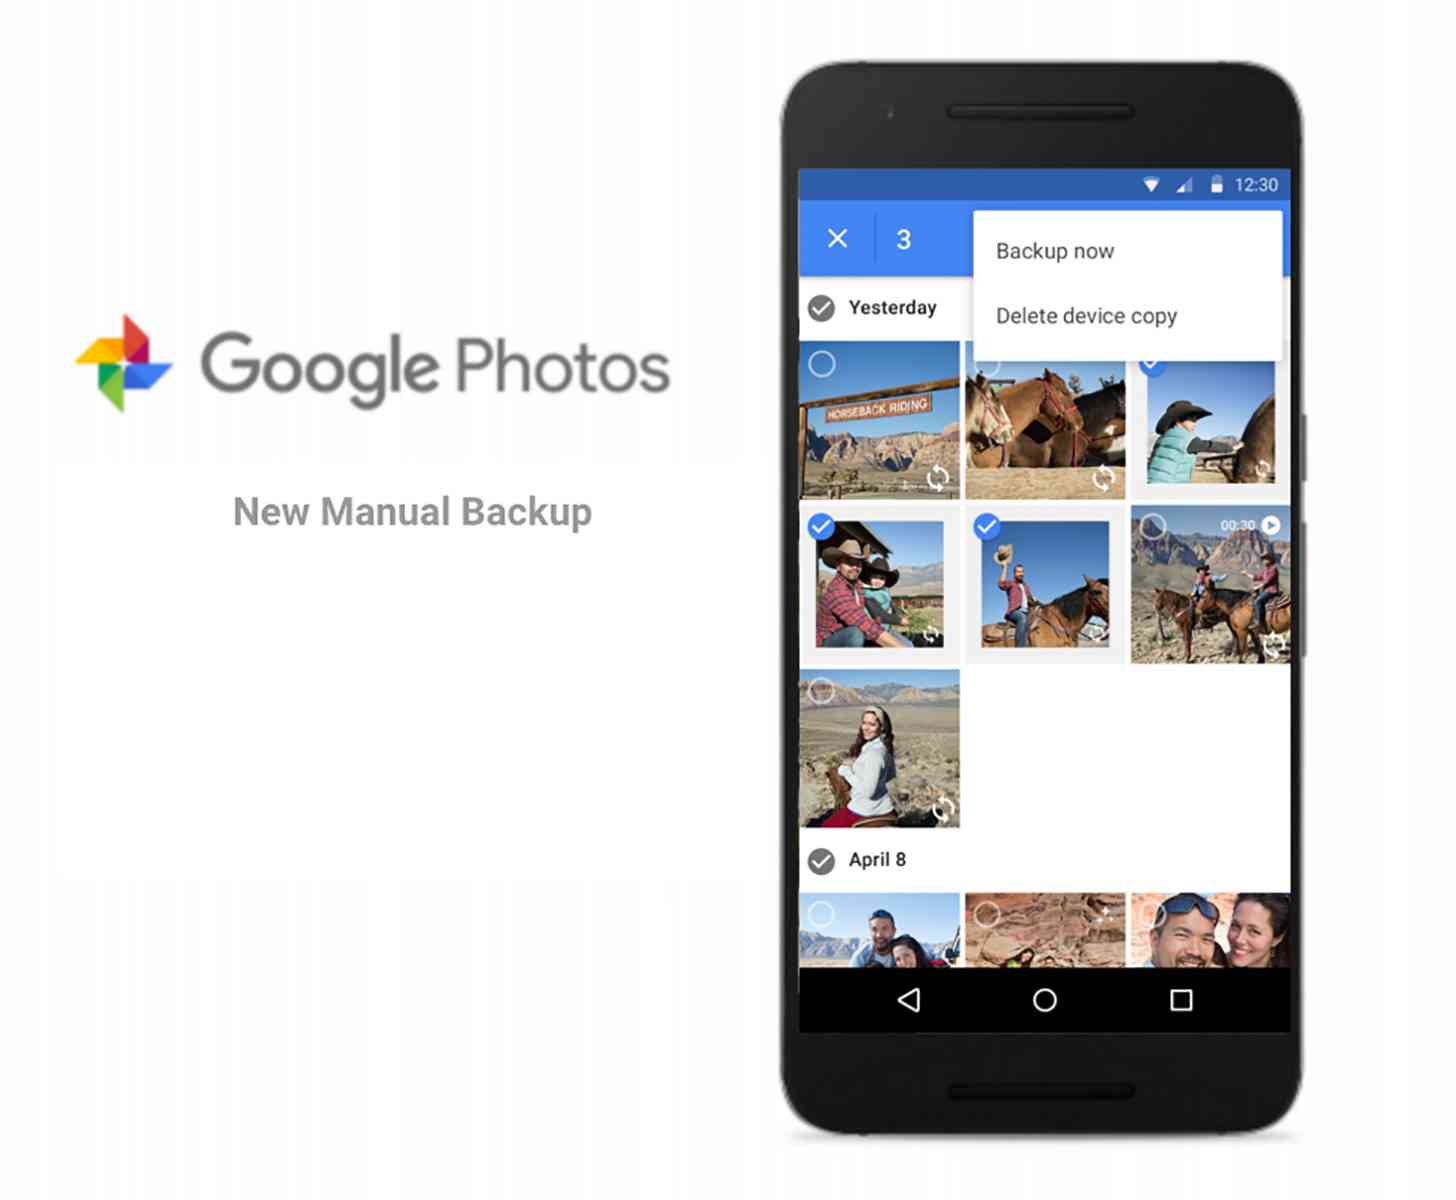 Google Photos Android Manual Backup